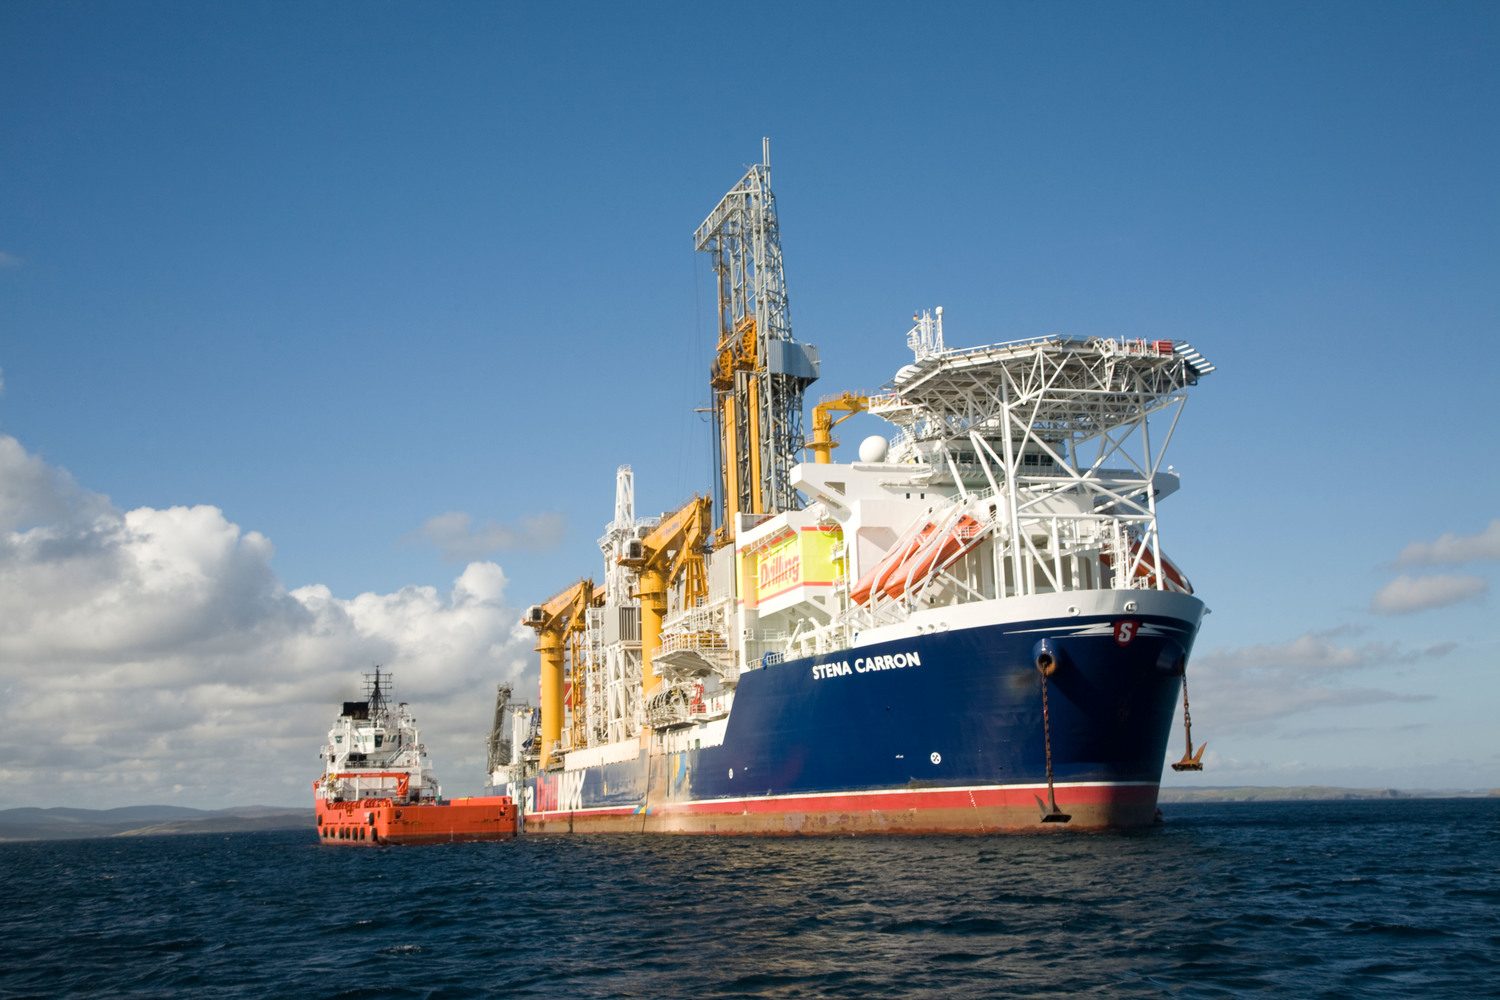 The Stena Carron oil drilling ship.